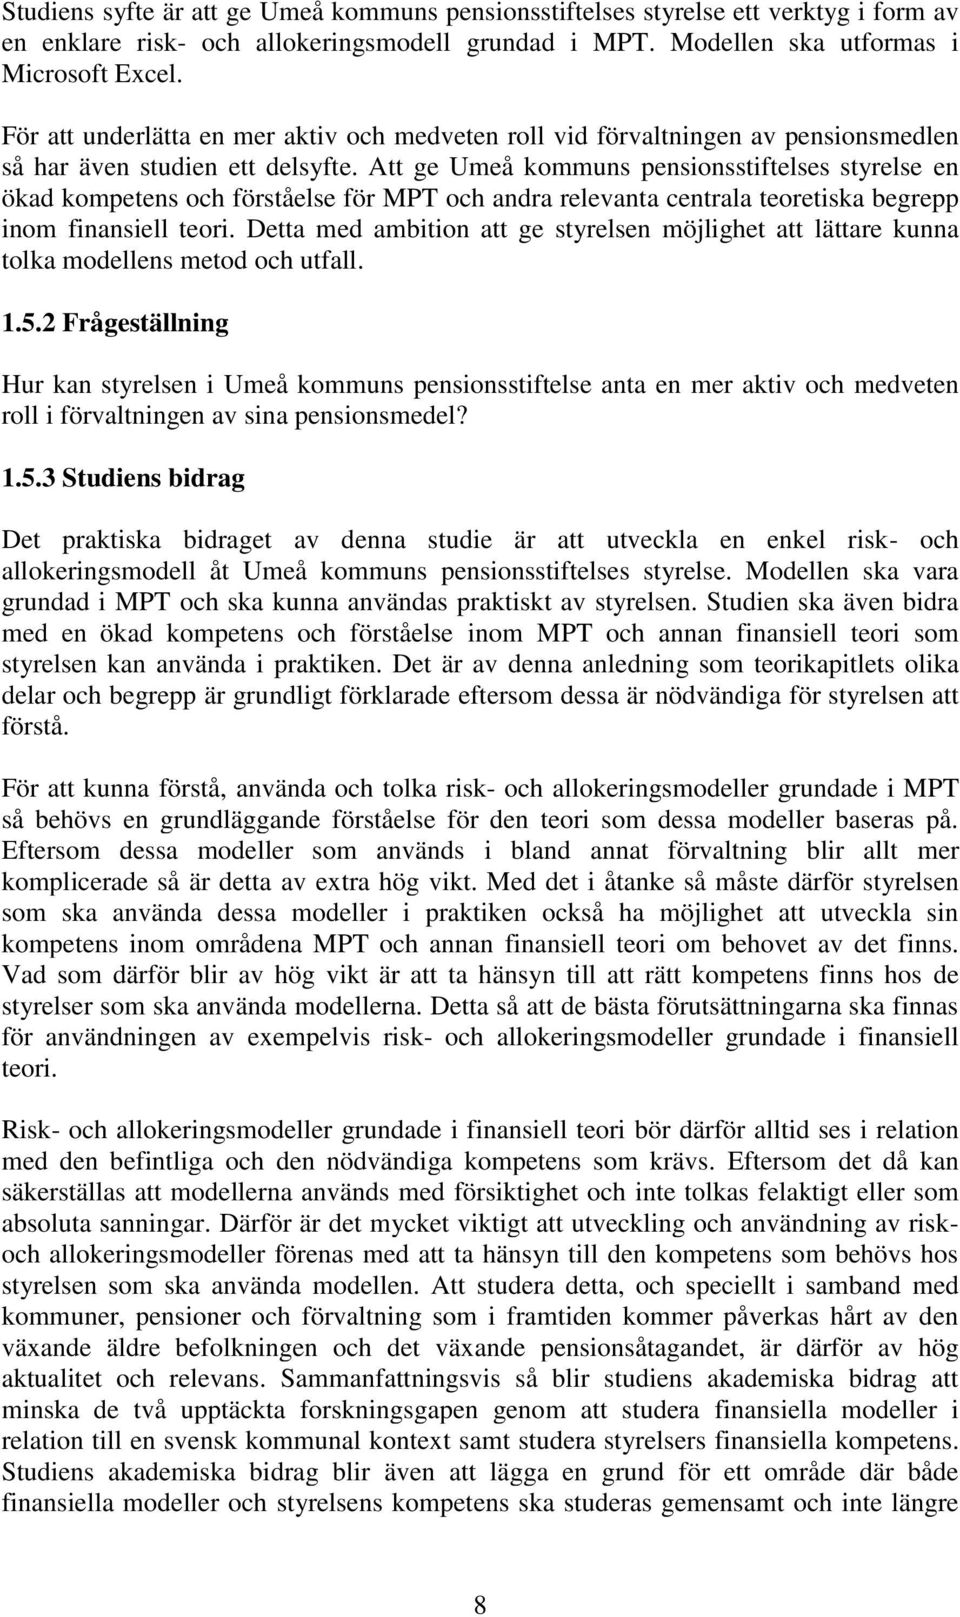 Att ge Umeå kommuns pensionsstiftelses styrelse en ökad kompetens och förståelse för MPT och andra relevanta centrala teoretiska begrepp inom finansiell teori.